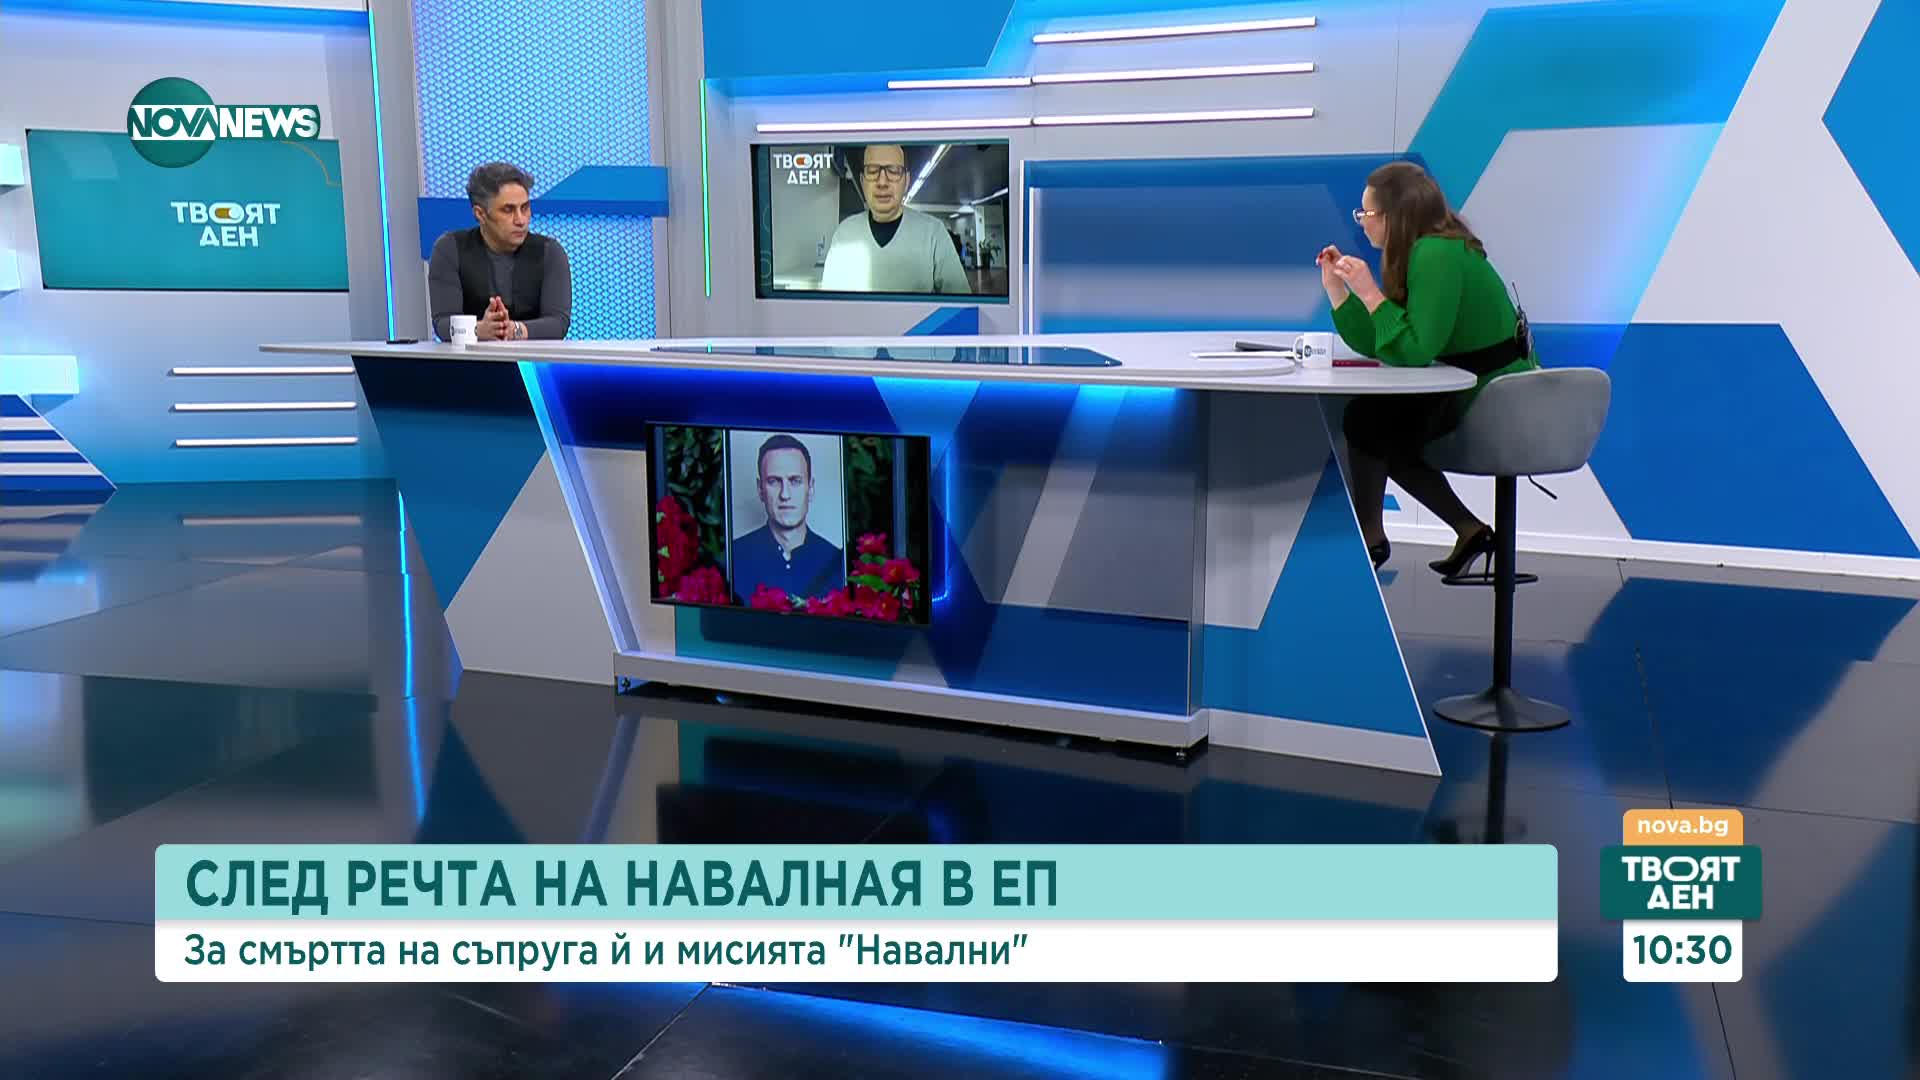 Асен Генов: Юлия Навалная има силите да обедини руската емиграция